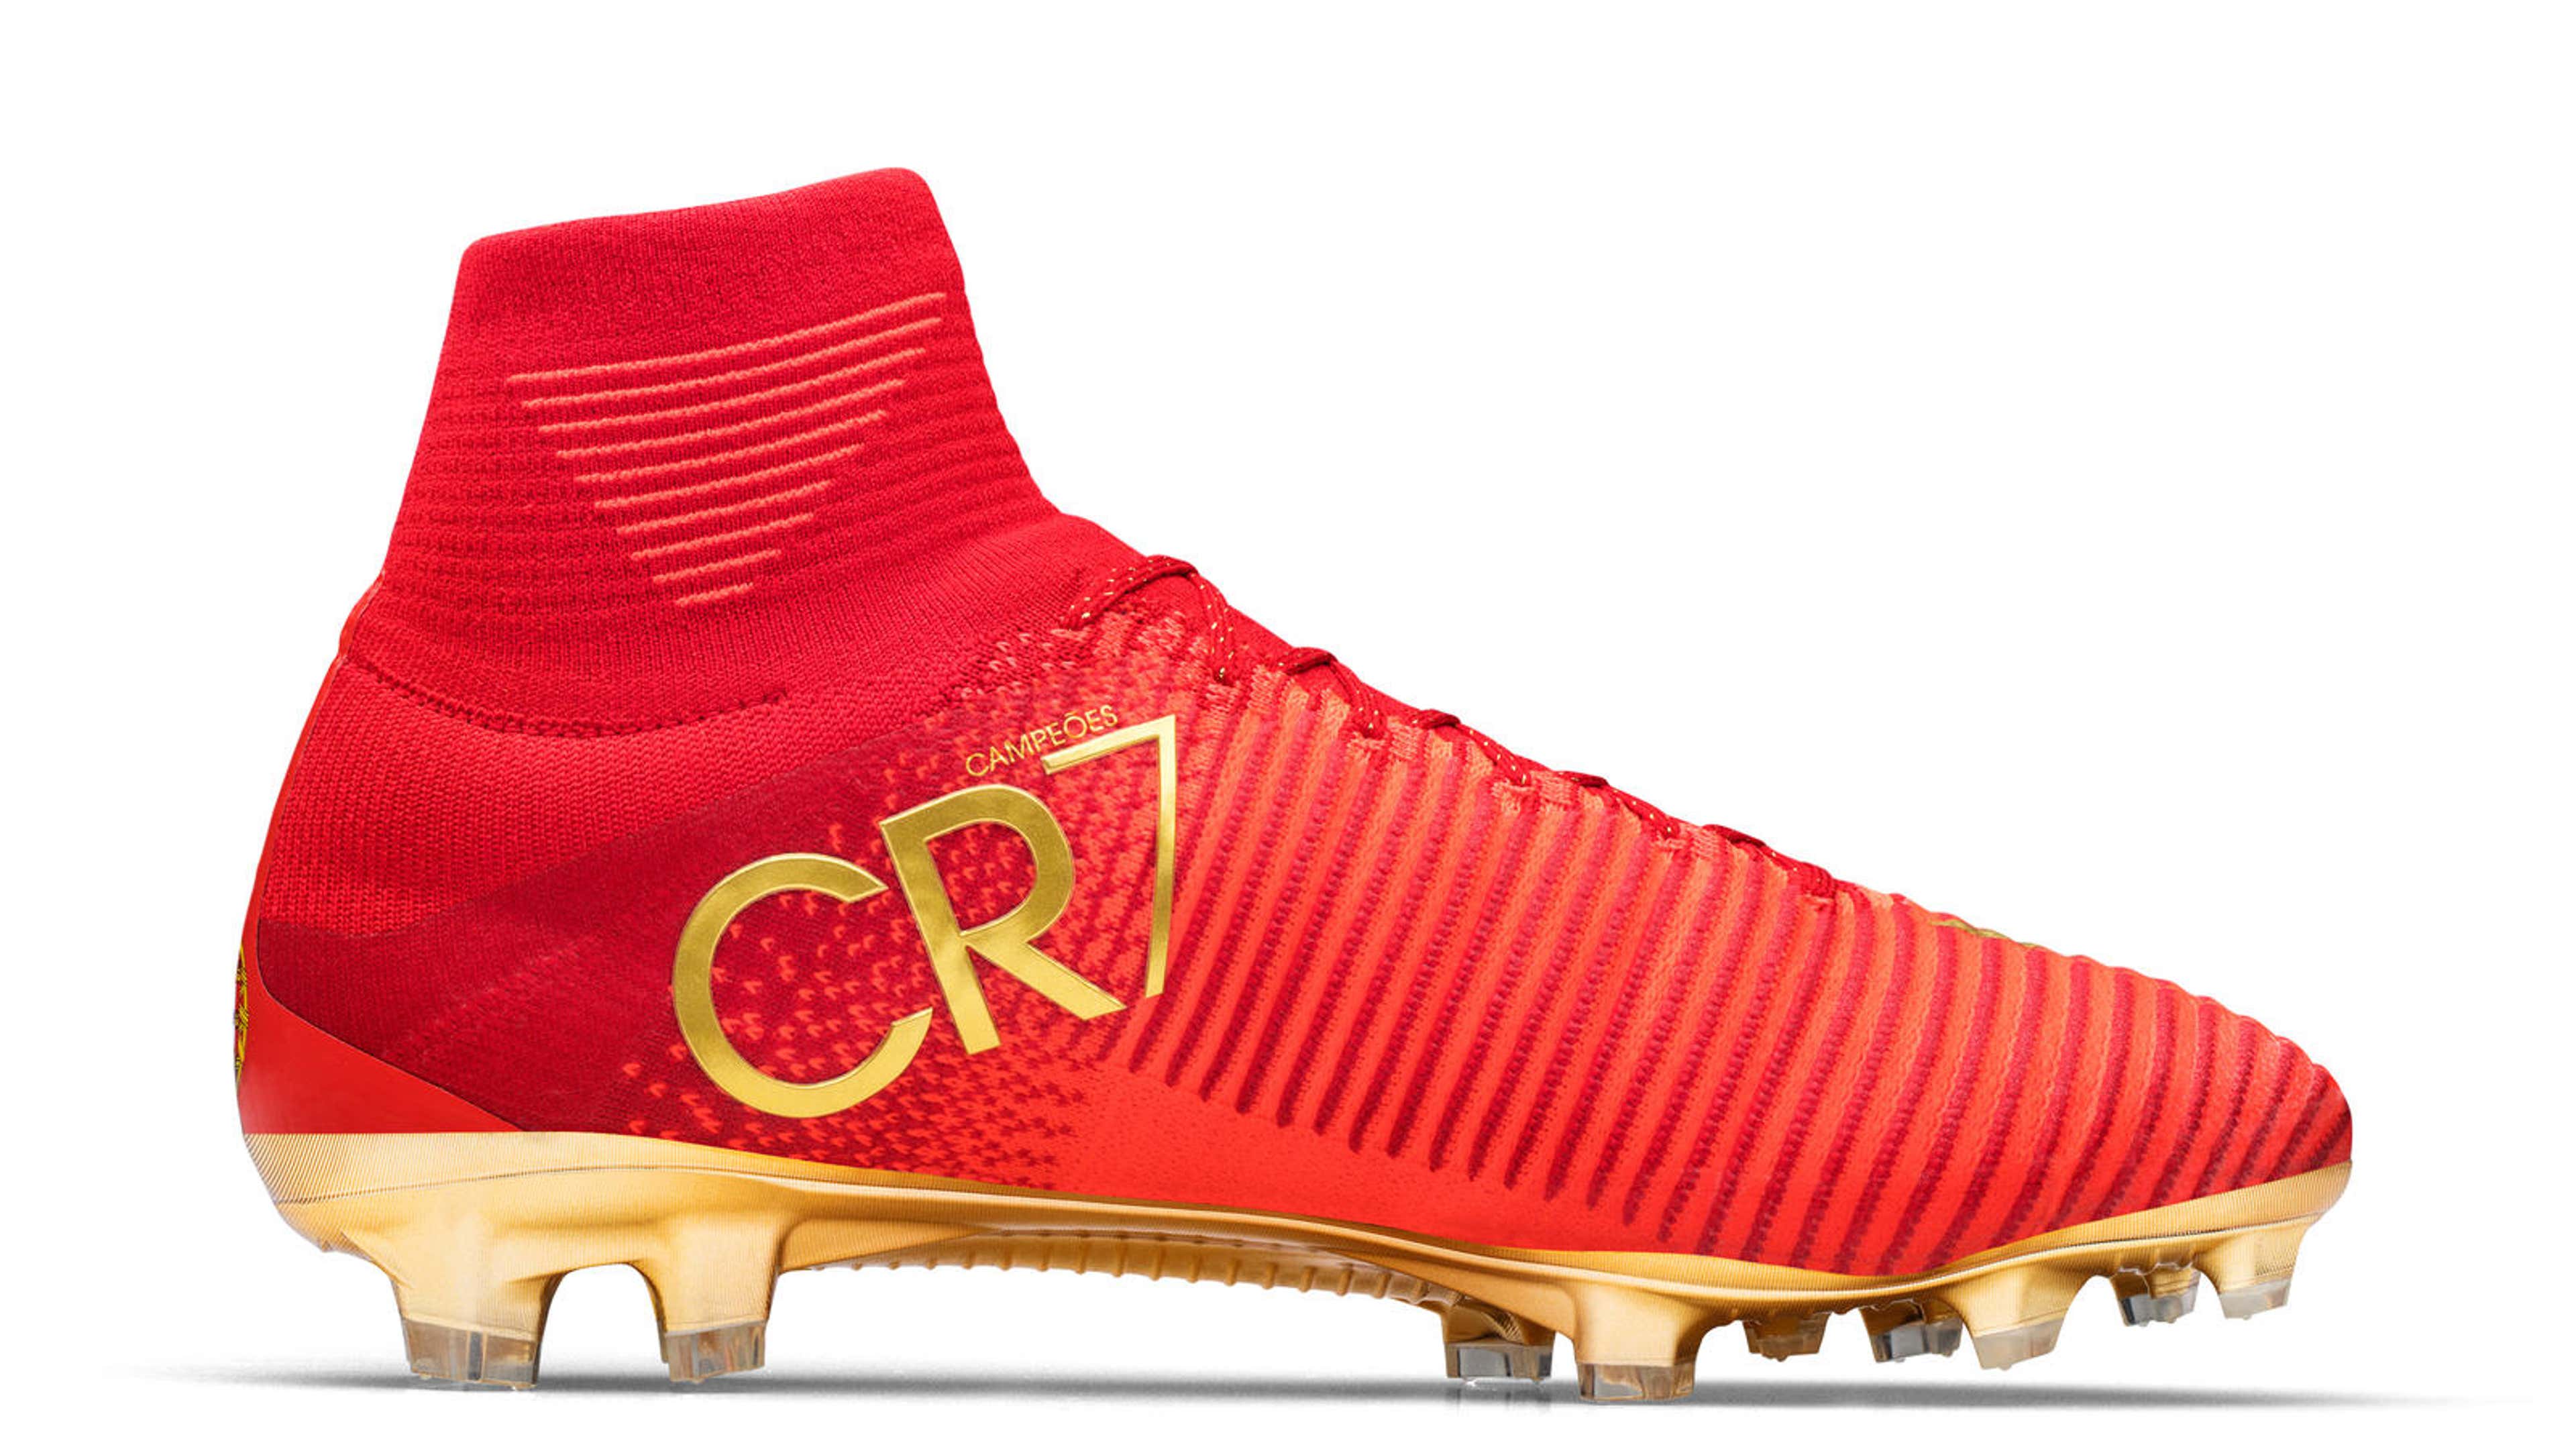 Artículos de Cristiano Ronaldo - CR7. Nike ES